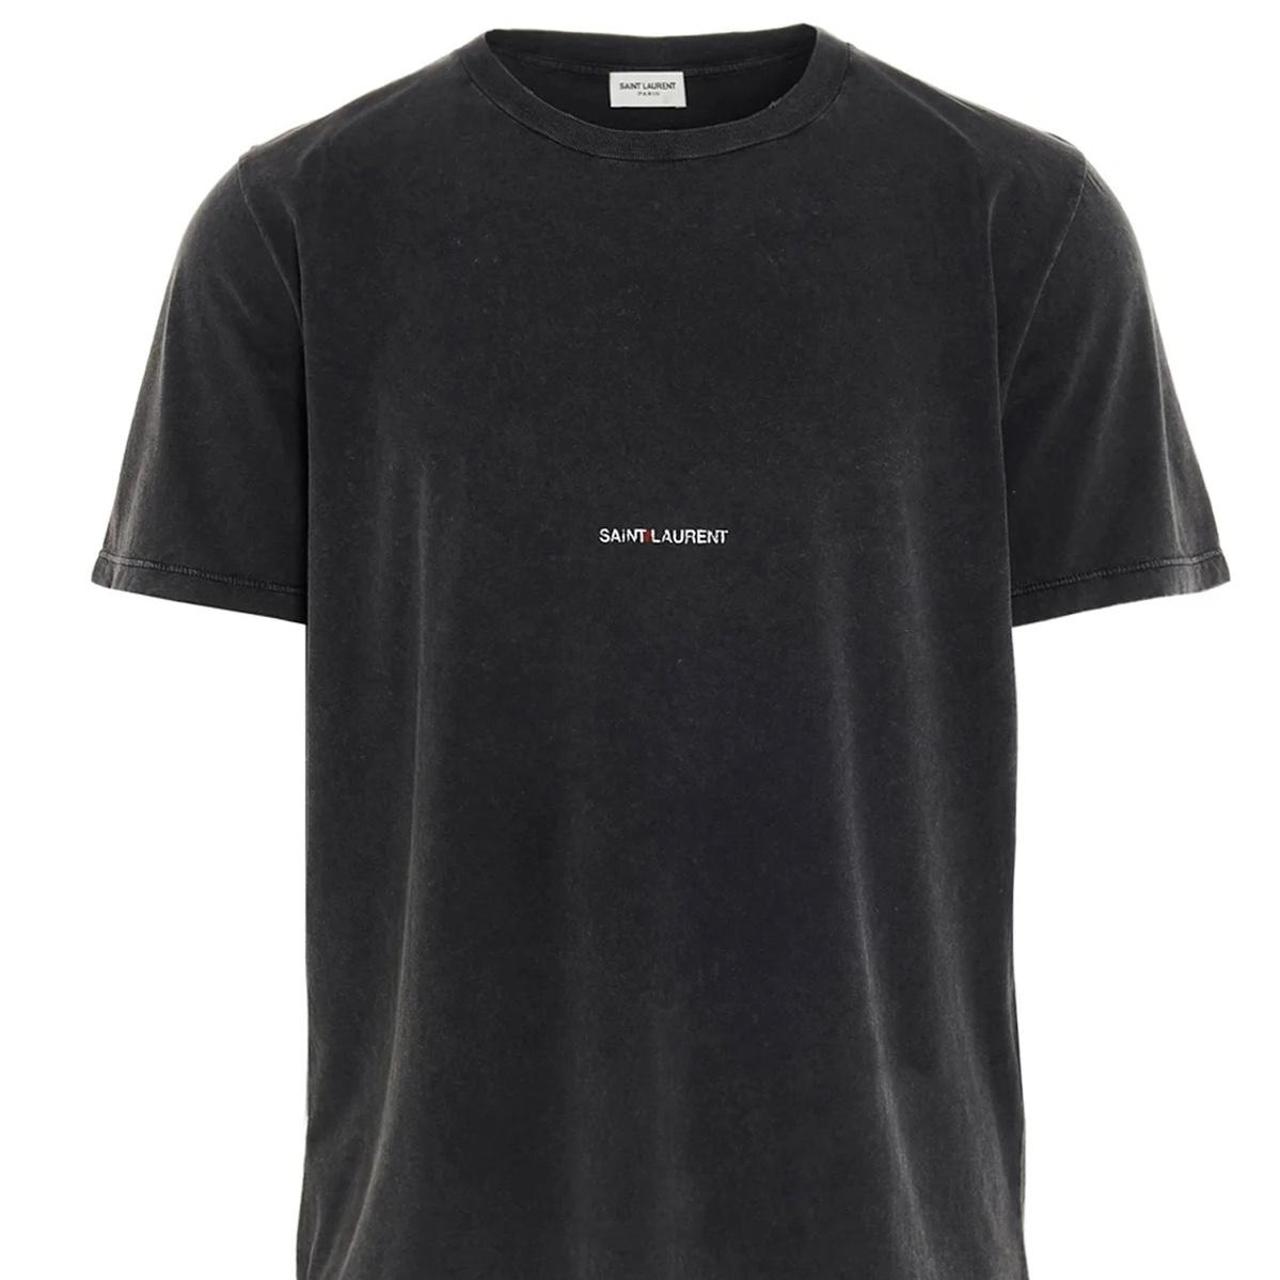 Authentic Saint Laurent Shirt Mens - fits small /... - Depop